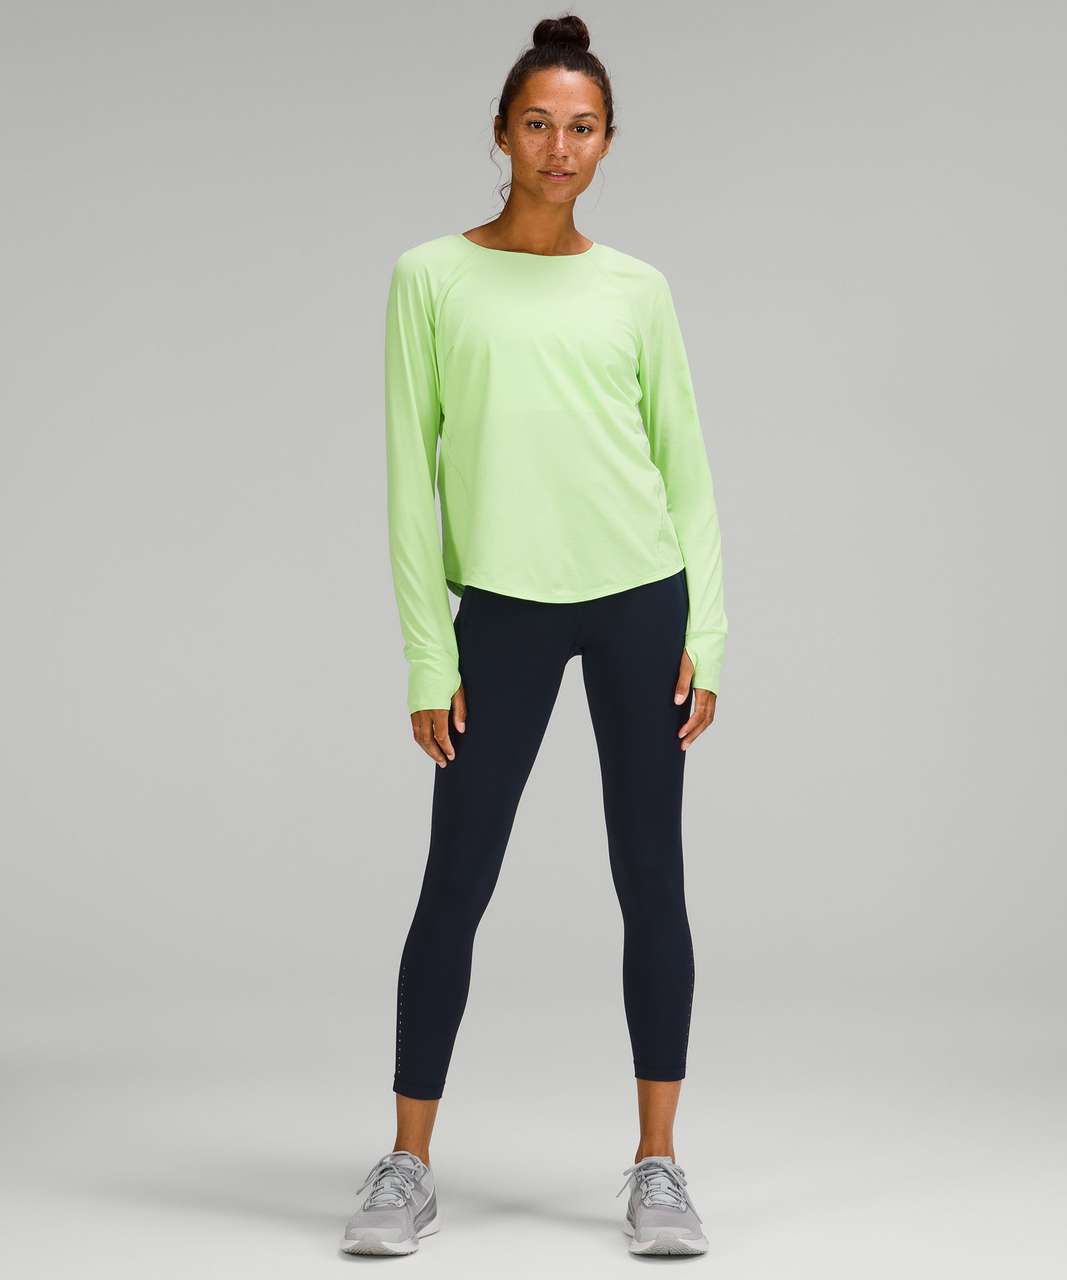 Lululemon Lightweight Stretch Running Long Sleeve Shirt - Scream Green Light